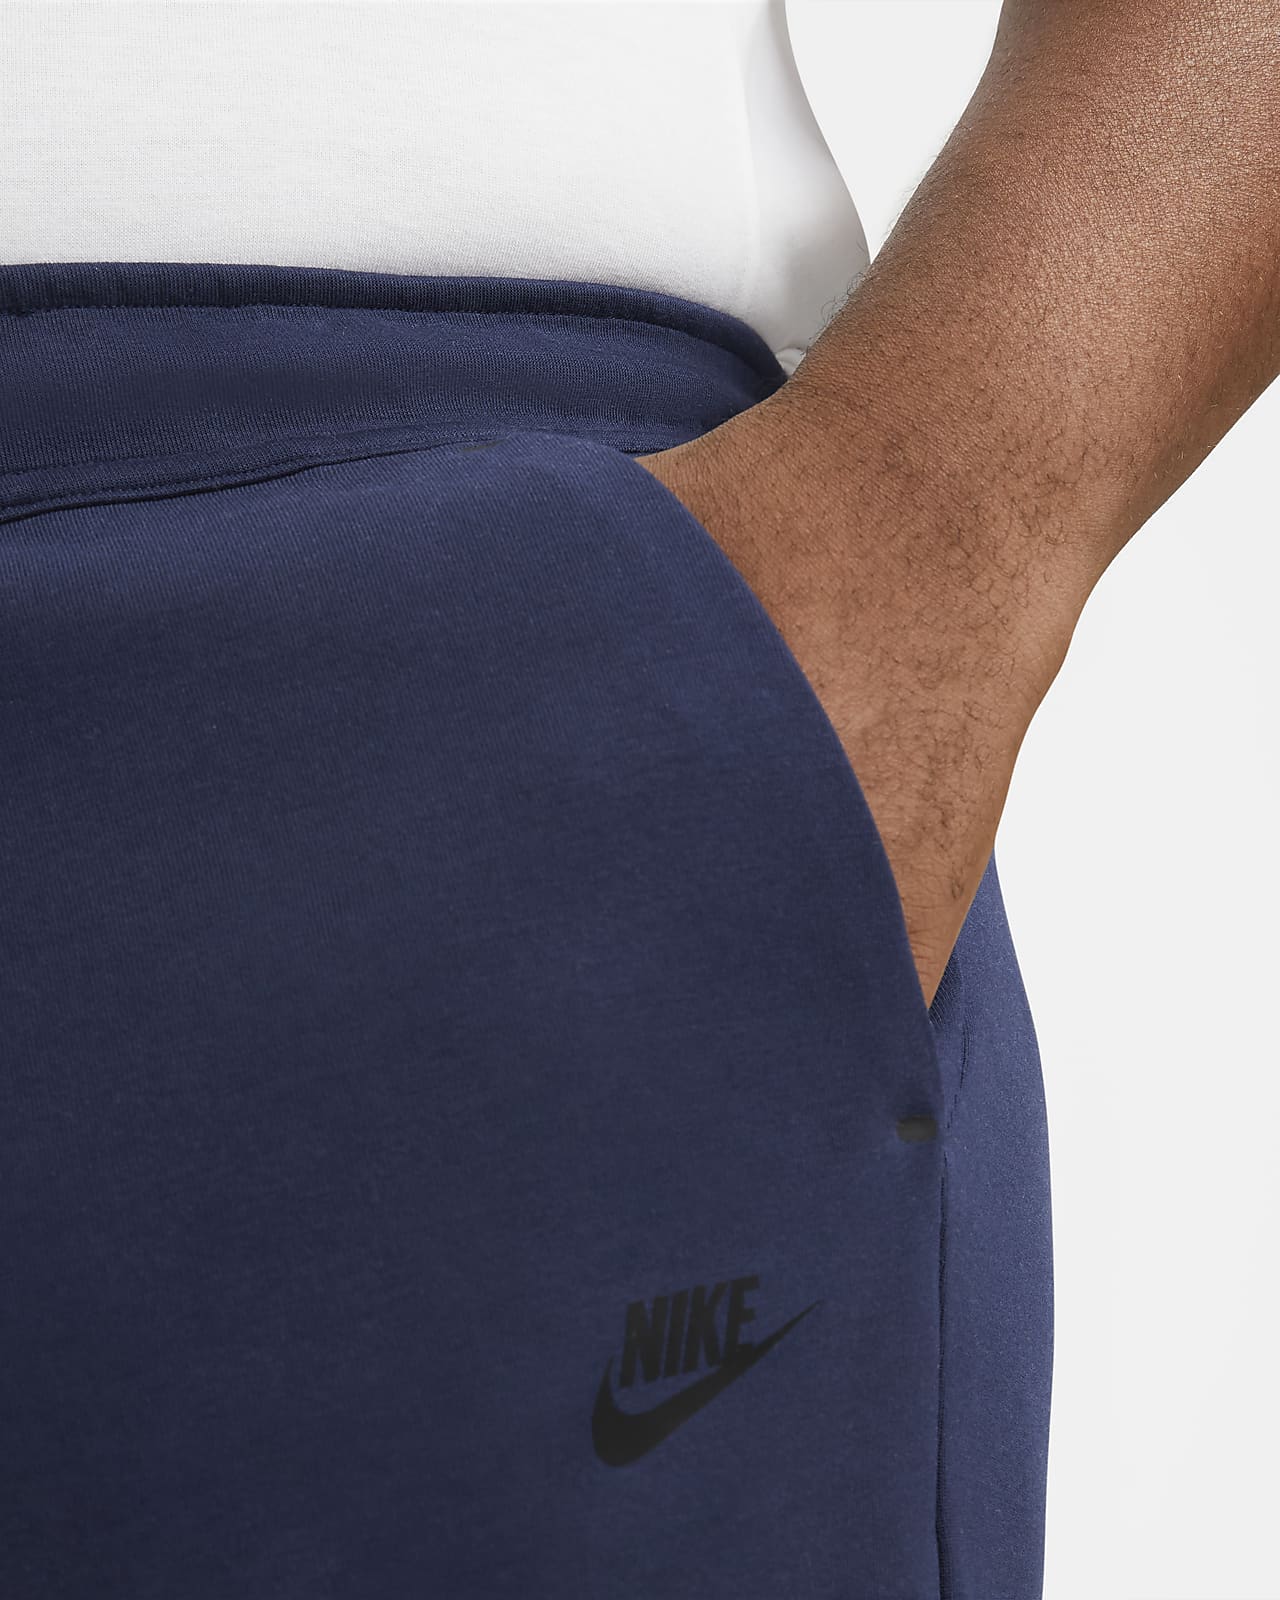 Nike Sportswear Tech Fleece Sport Casual Knit Pants Men Light Grey